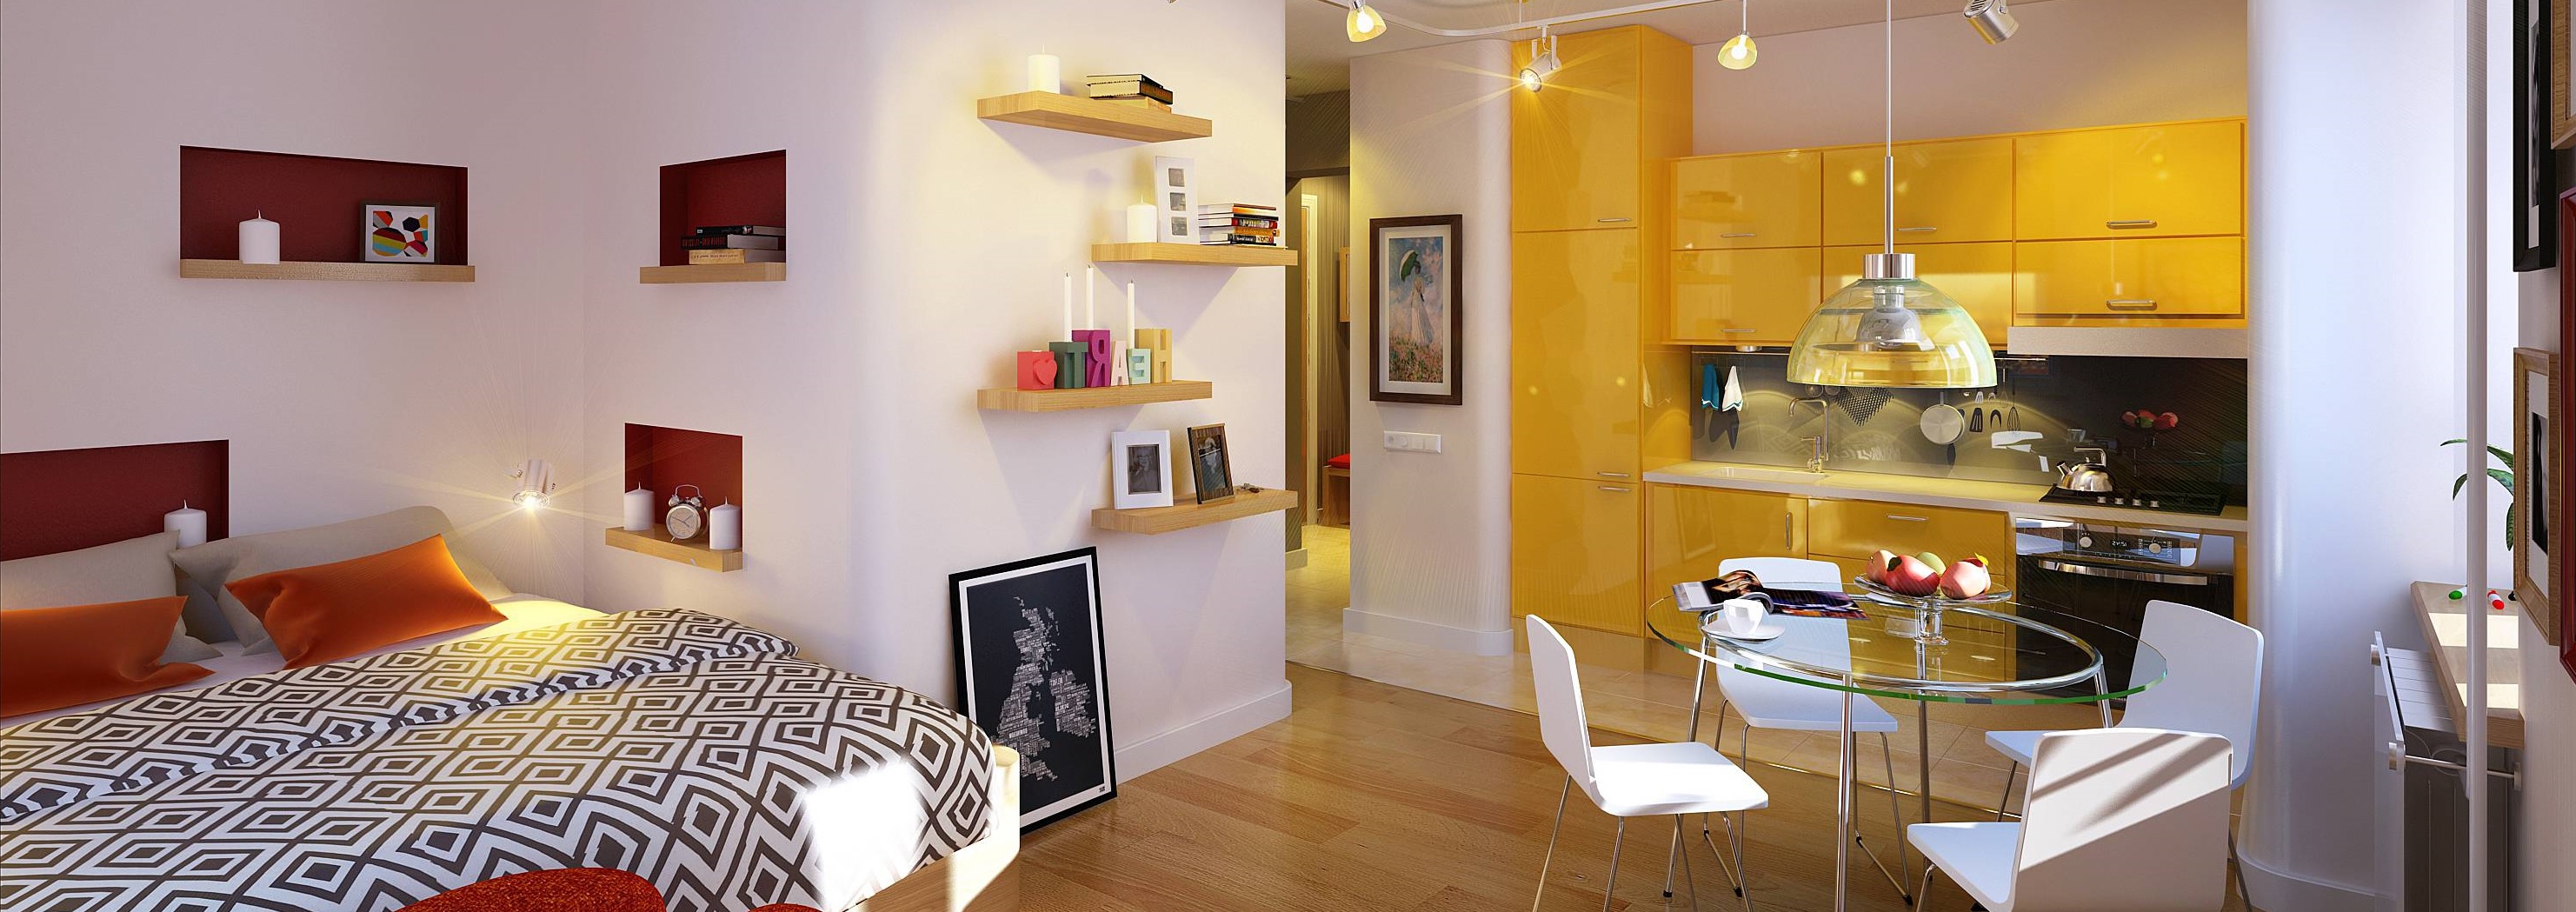 Как организовать интерьер в маленькой квартире, чтобы сделать ее комфортной и стильной